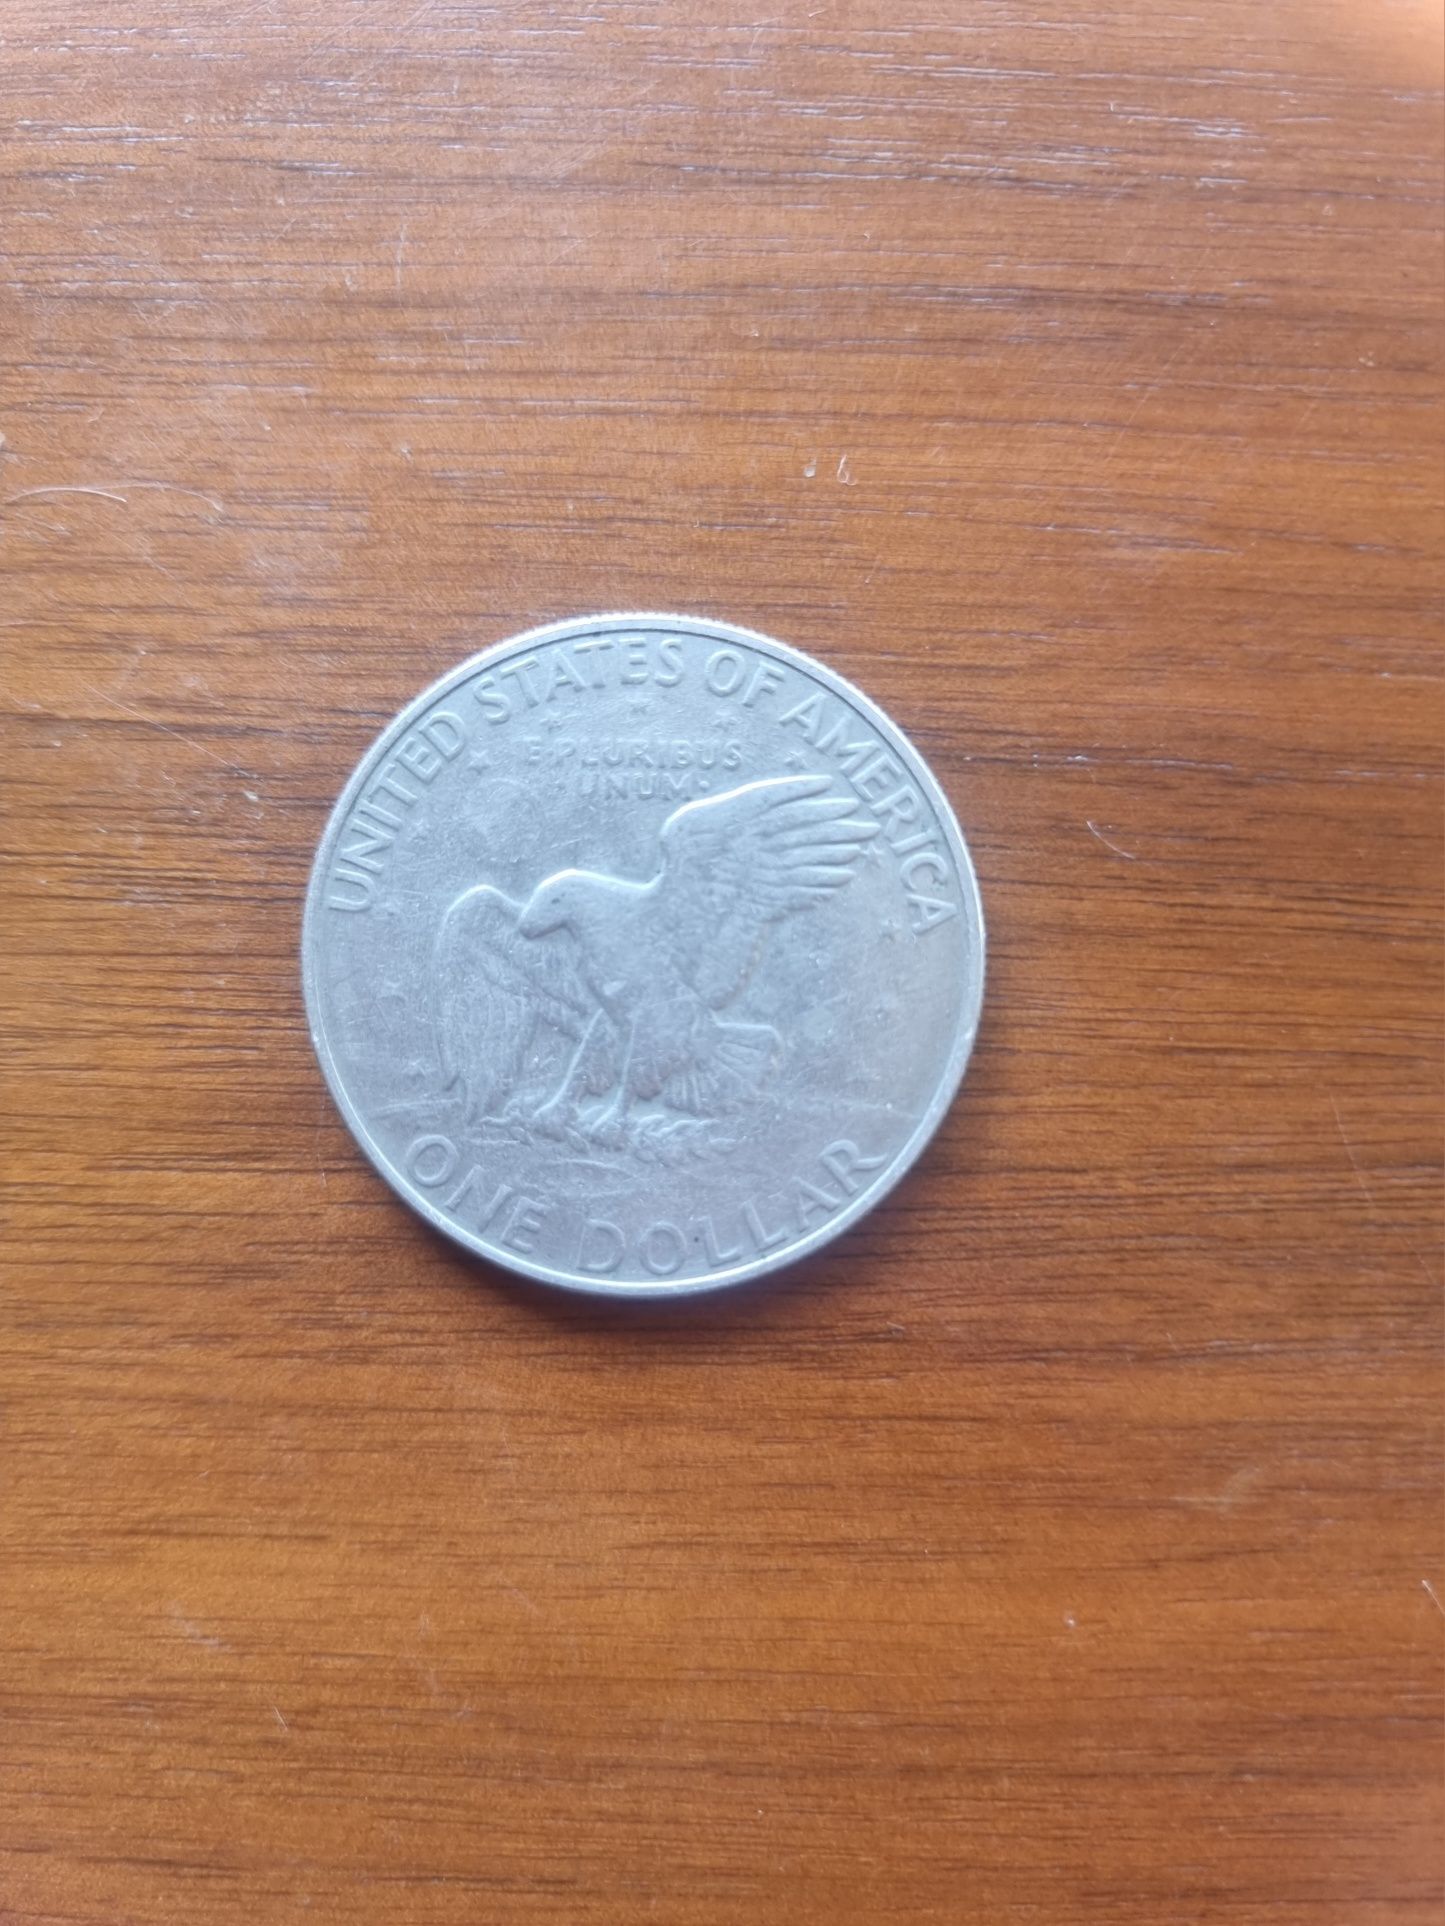 1 dolar 1972 D USA